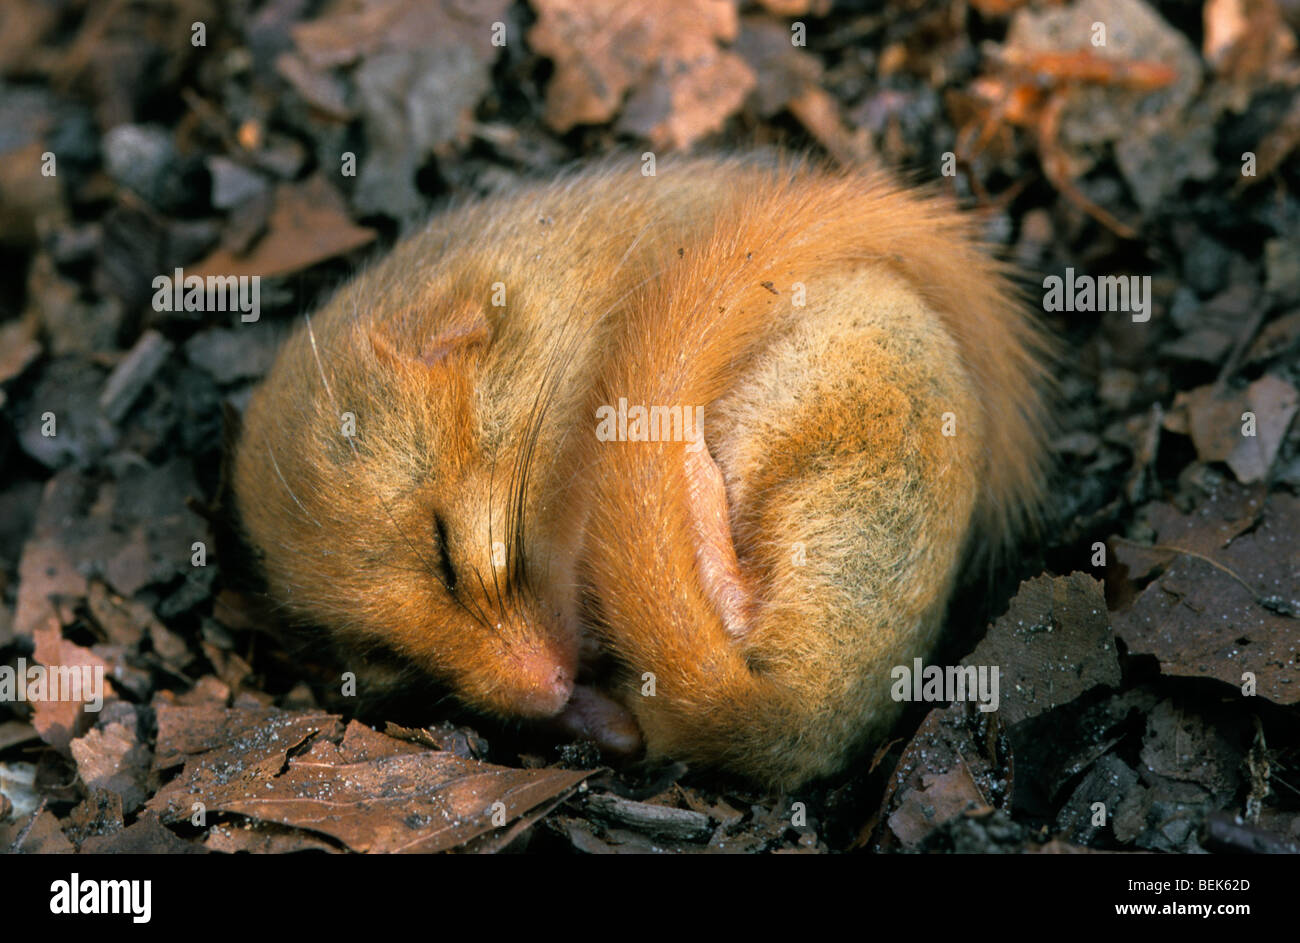 Loir commun / Muscardinus avellanarius hazel (Vanessa cardui) dormant dans la litière à même le sol forestier au cours de l'hibernation en hiver Banque D'Images